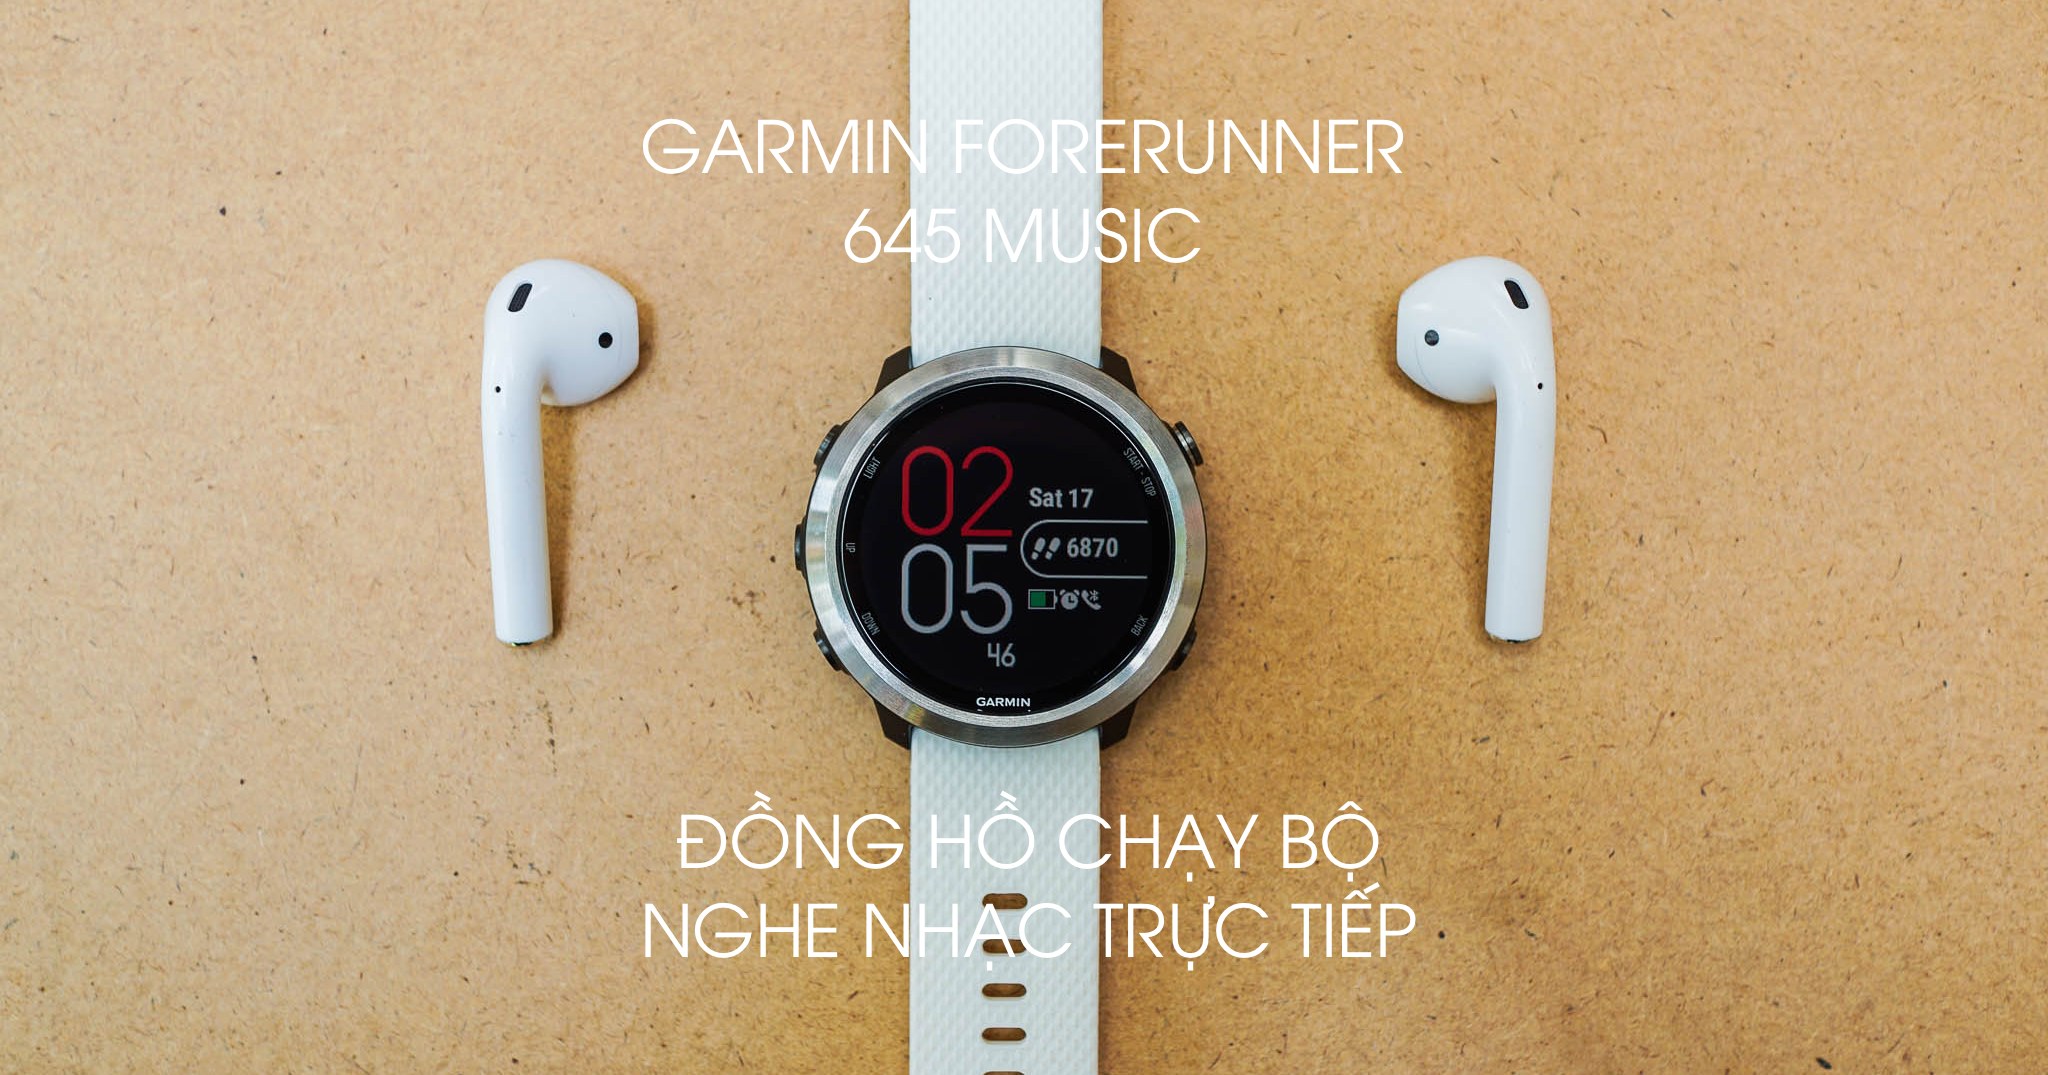 Trên tay Forerunner 645 Music: Đồng hồ chạy bộ nghe nhạc đầu tiên của Garmin